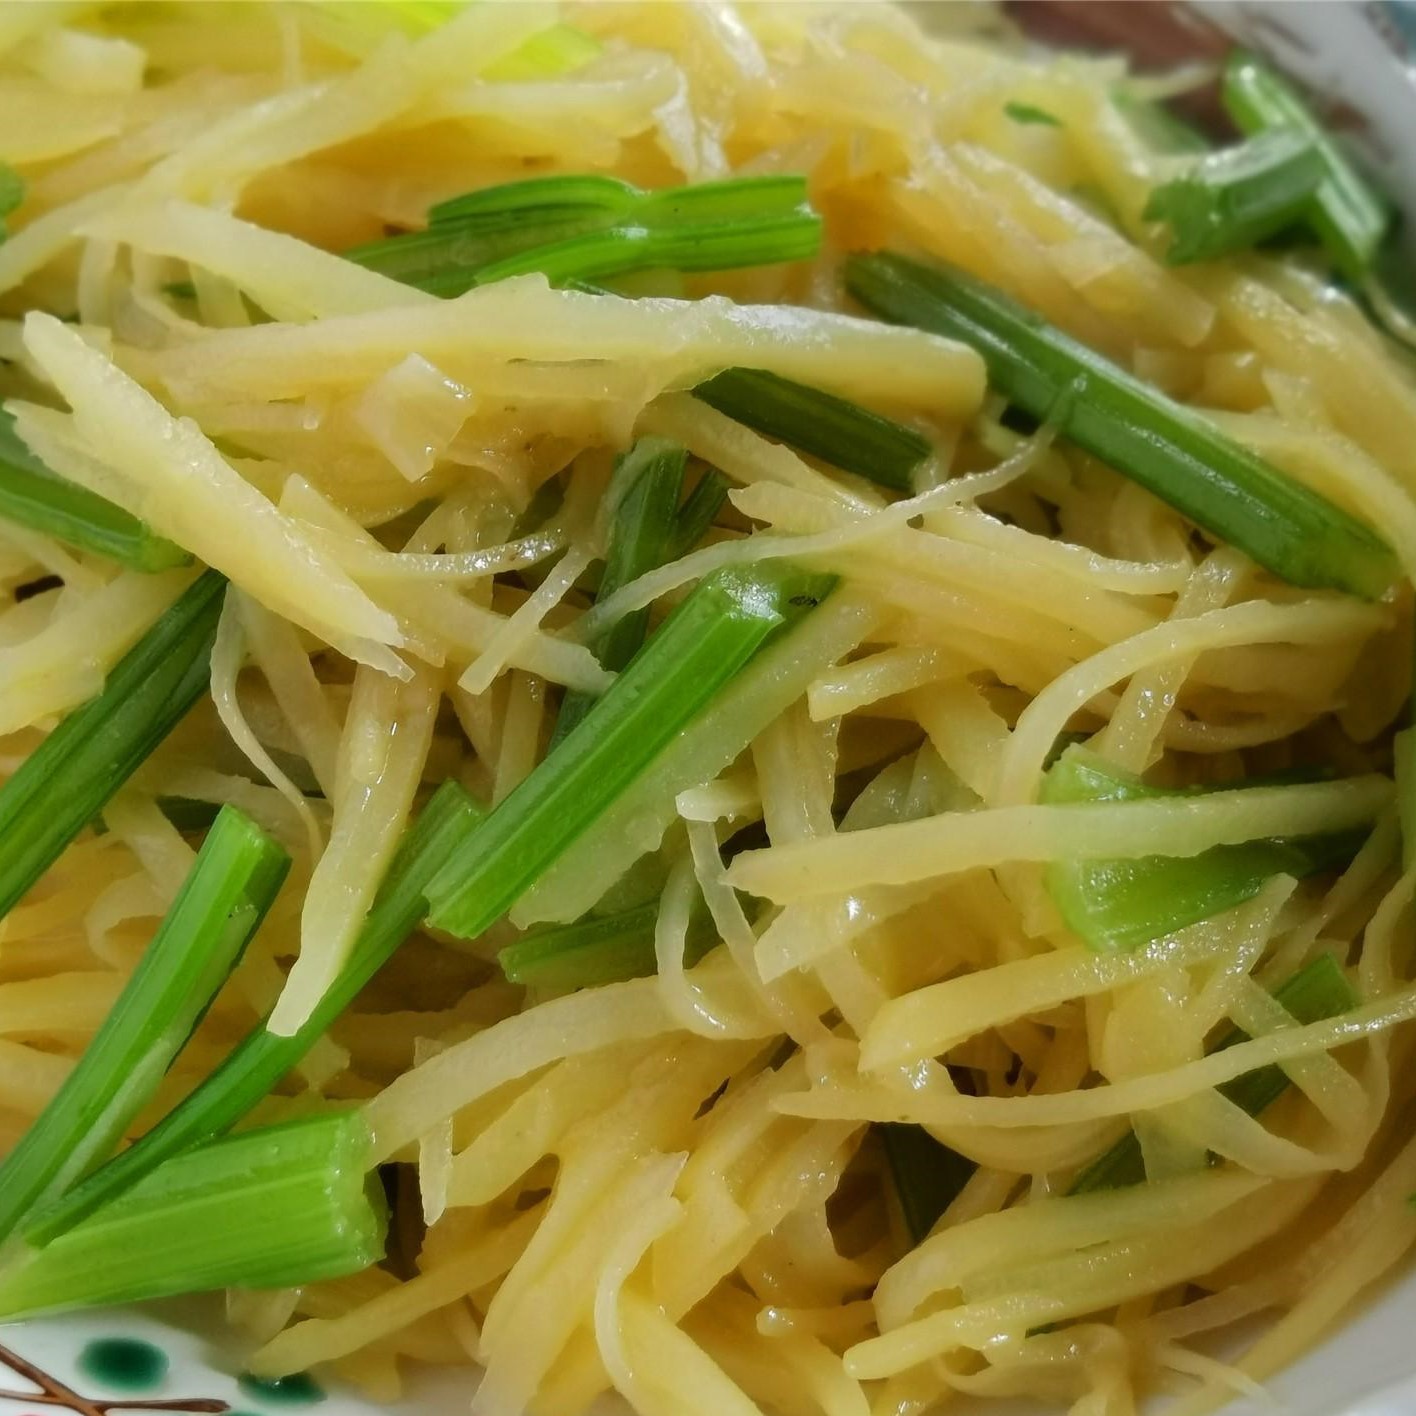 Stir-fried shredded potatoes with celery recipe 2020